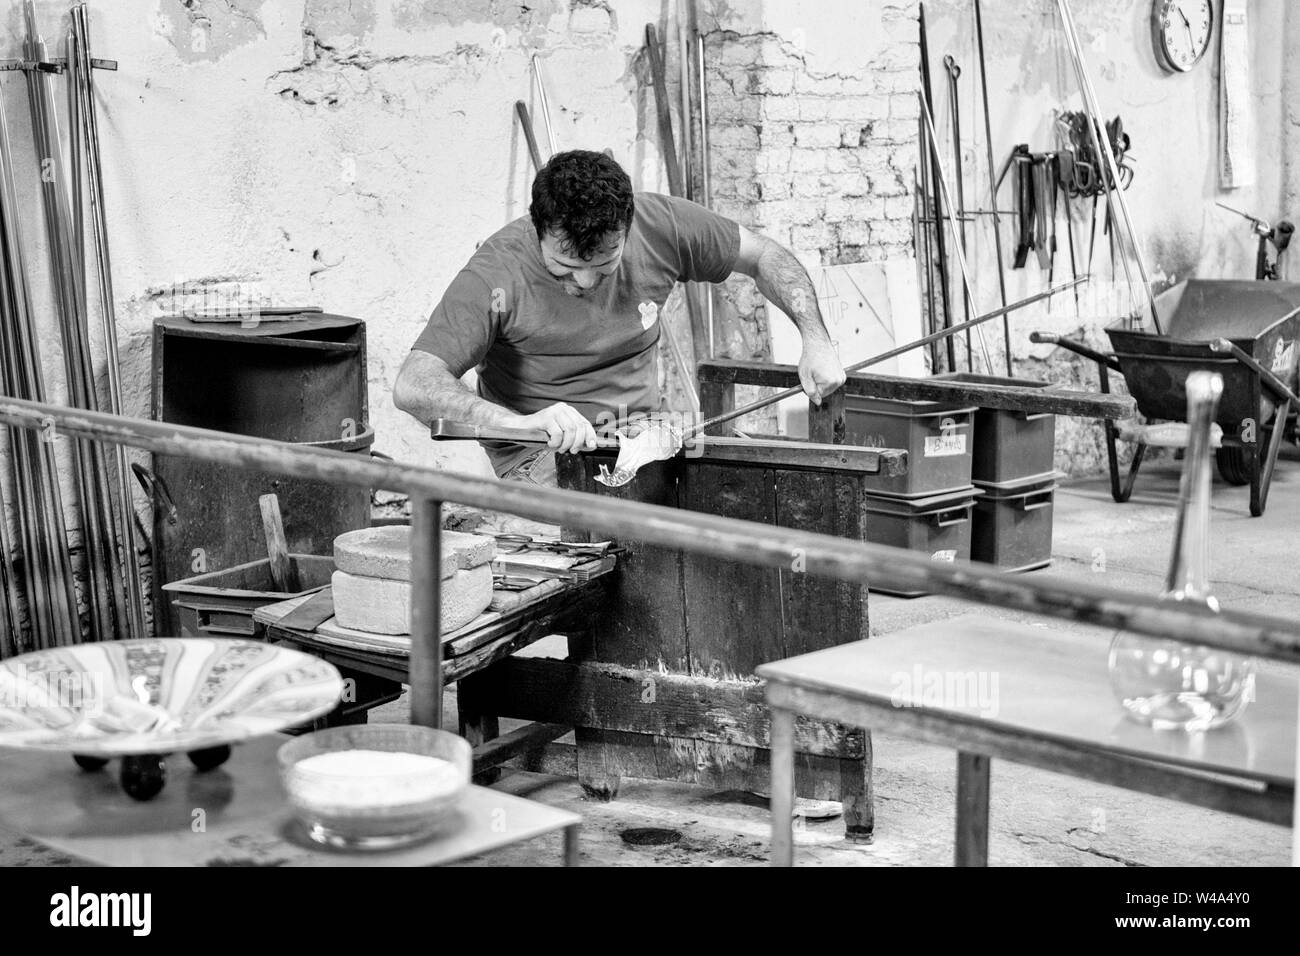 Insel Murano, Italien - 23. April 2017: Glasbläserei Handwerker bei der Arbeit in einer Kristall-Glas-Werkstatt in Insel Murano, Venedig. Murano Glasmacher verwenden Sie die s Stockfoto